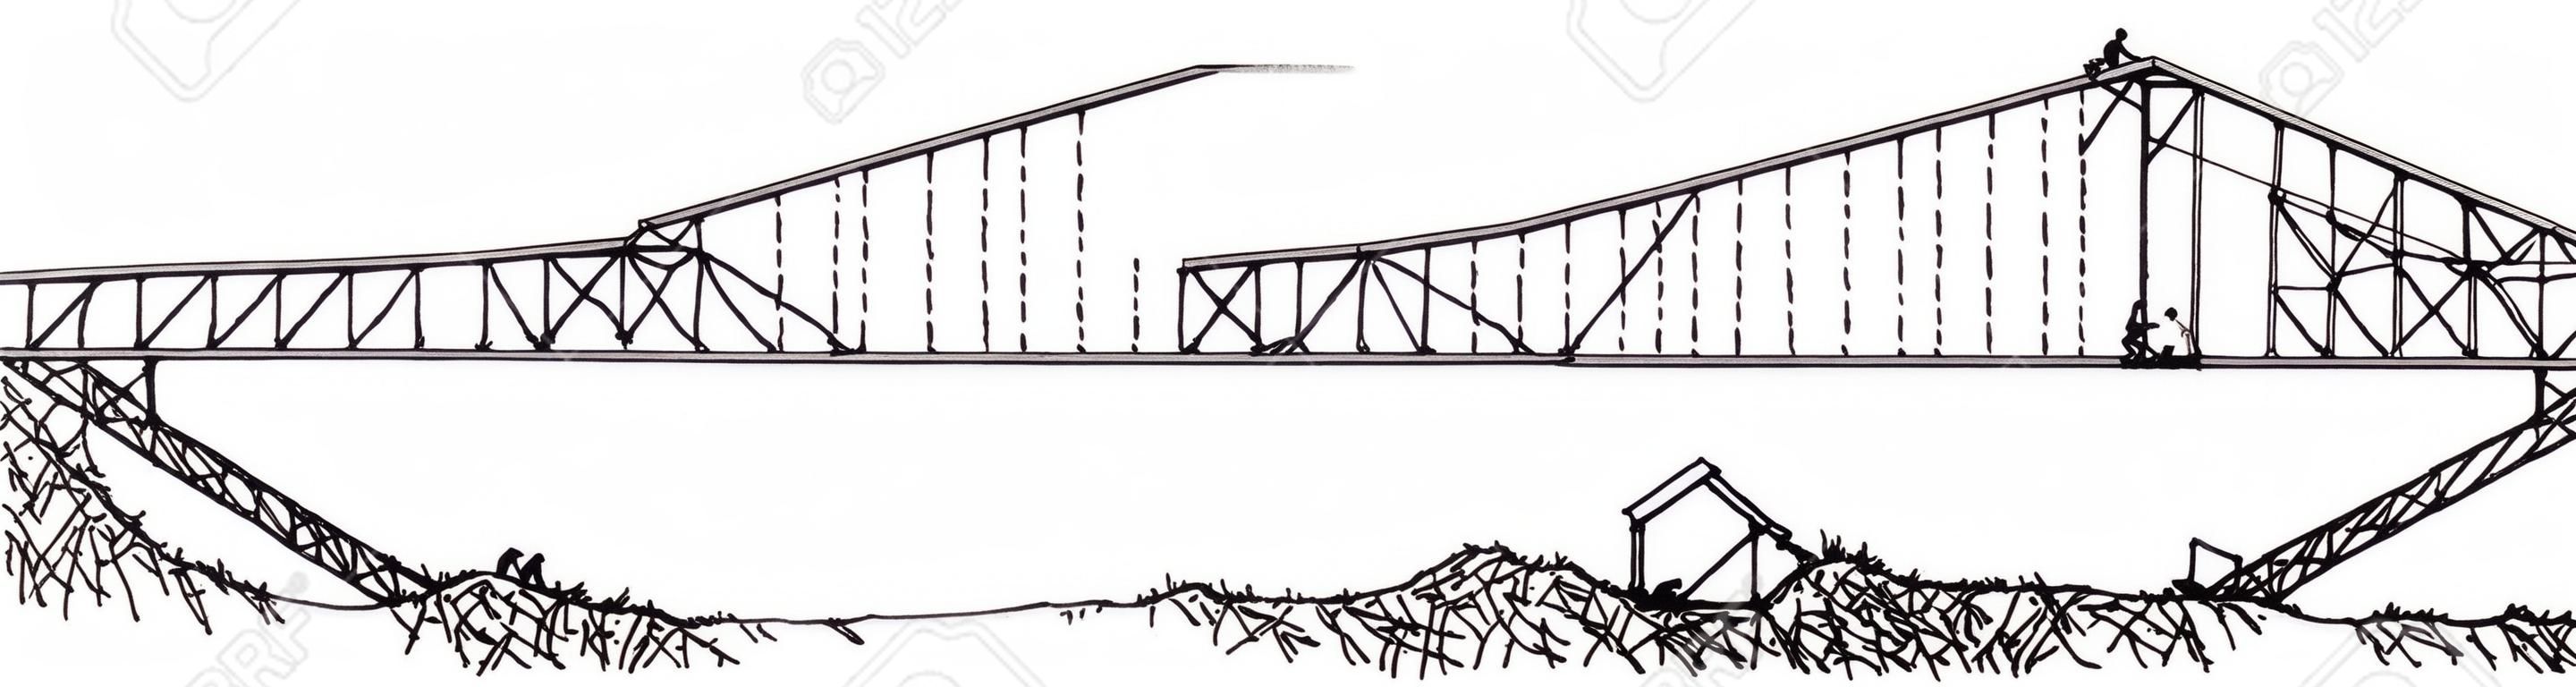 Wiadukt Viaur był pierwszym dużym stalowym mostem zbudowanym we francji, rysunkiem linii vintage lub ilustracją grawerowania.